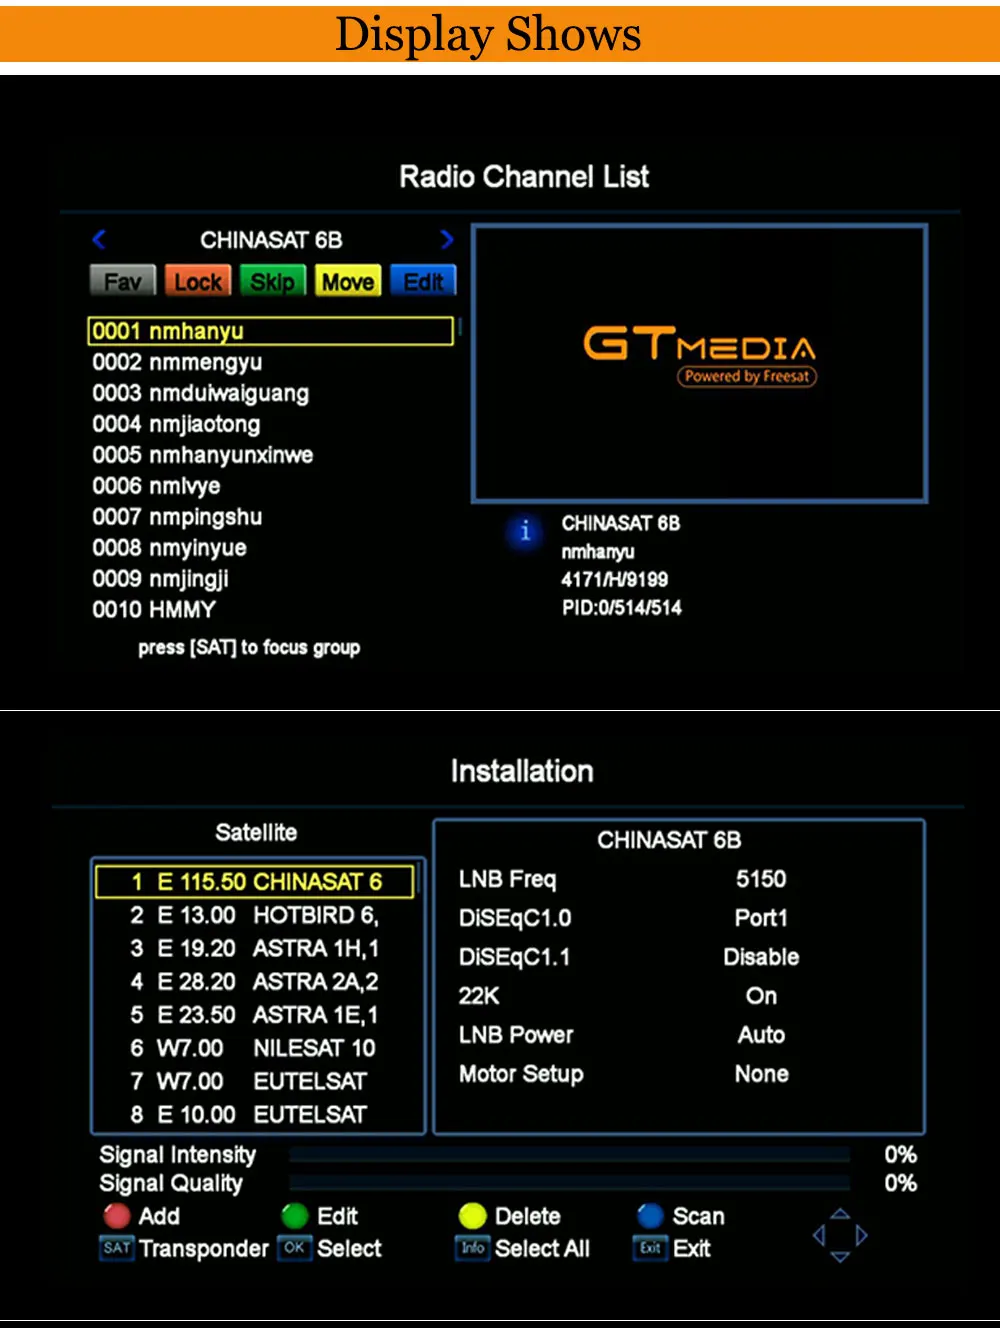 Freesat V7 HD DVB-S2 1080P спутниковый ТВ приемник+ USB wifi Anttena Испания Германия ТВ тюнер PK V8 супер+ 1 год Испания Европа Клайн